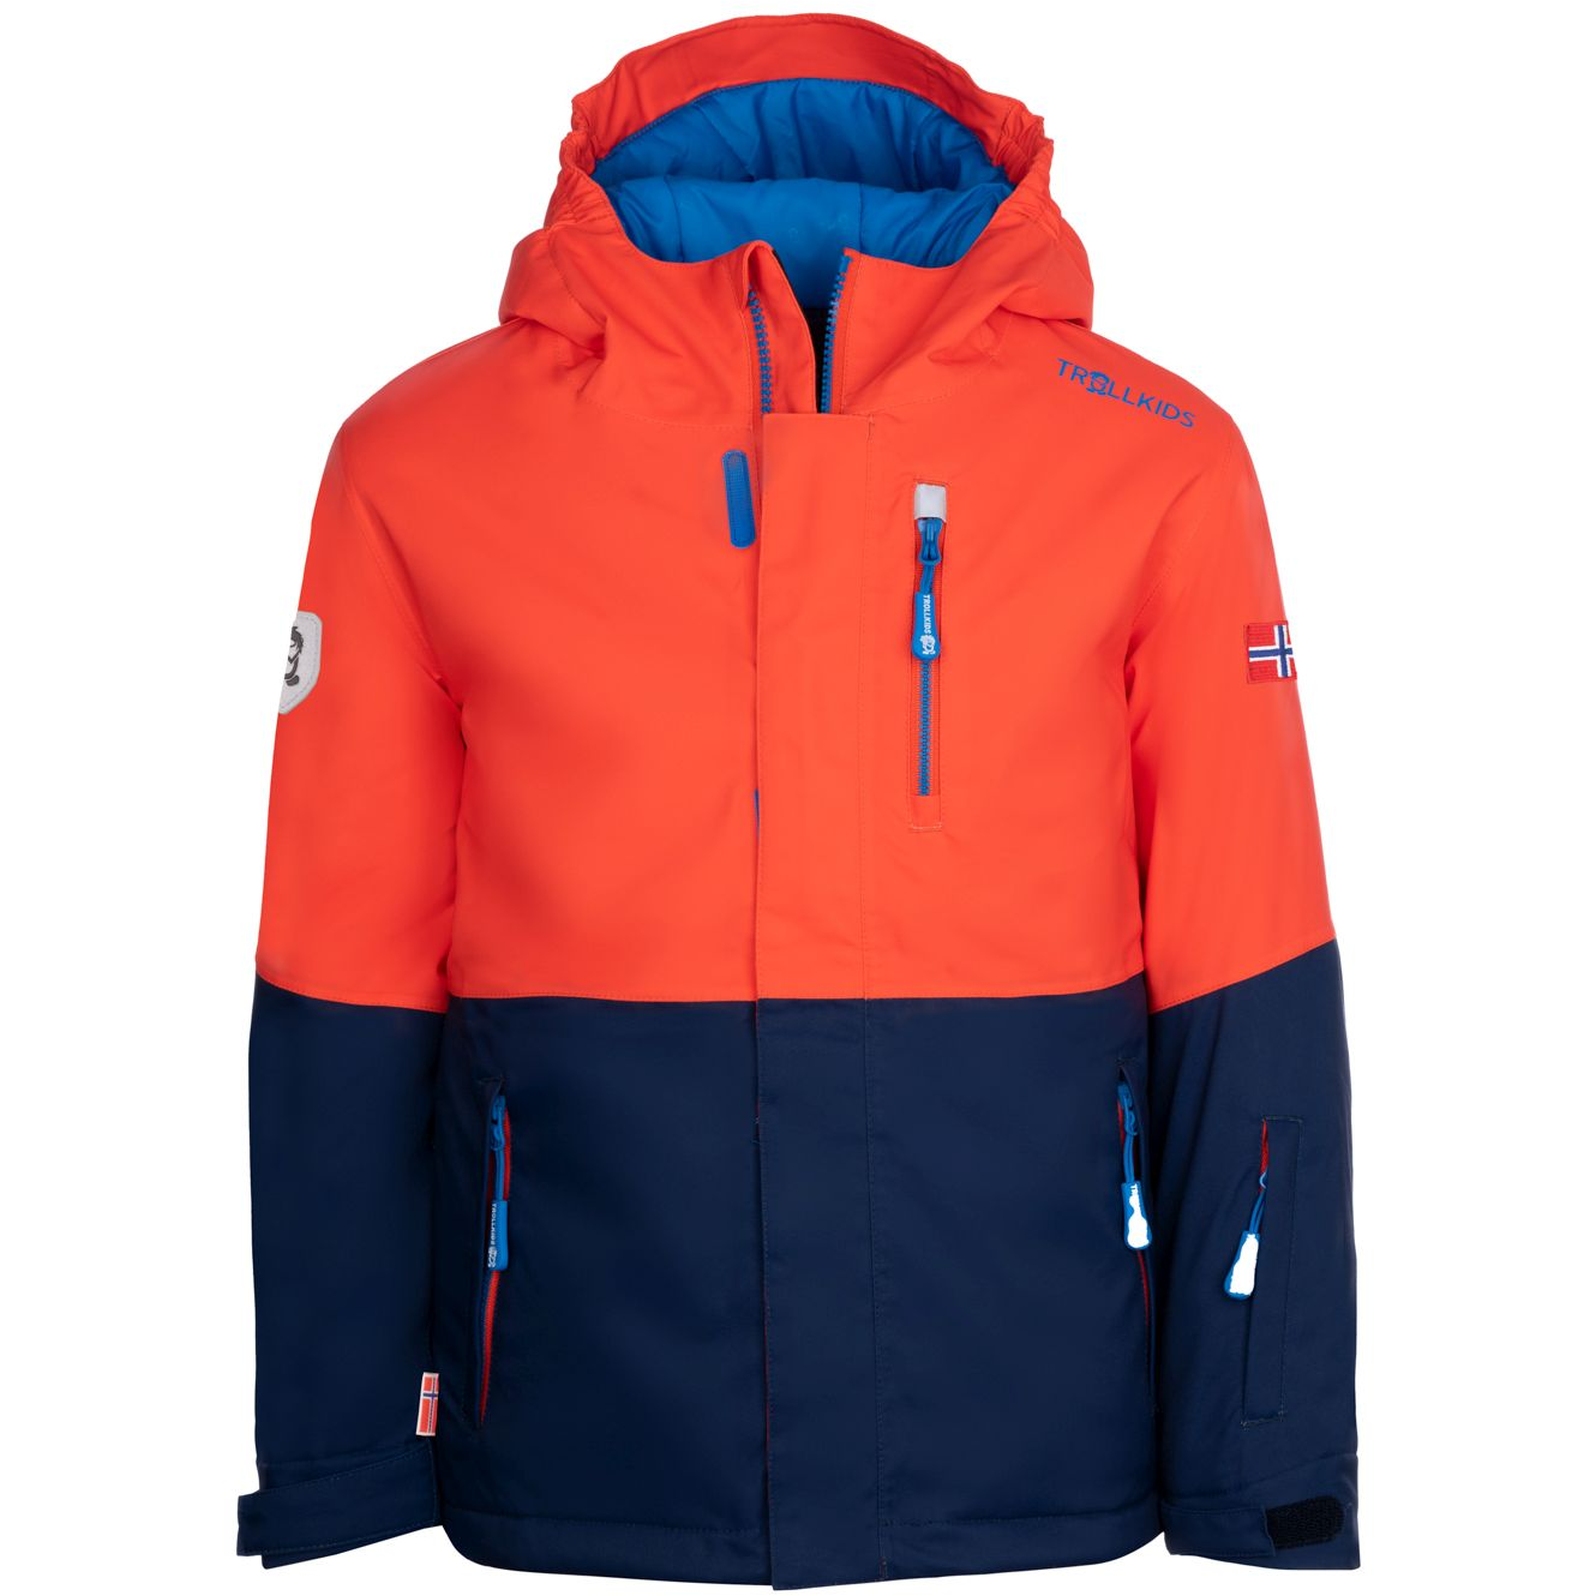 Produktbild von Trollkids Hallingdal Ski-Jacke Kinder - Flame Orange/Navy